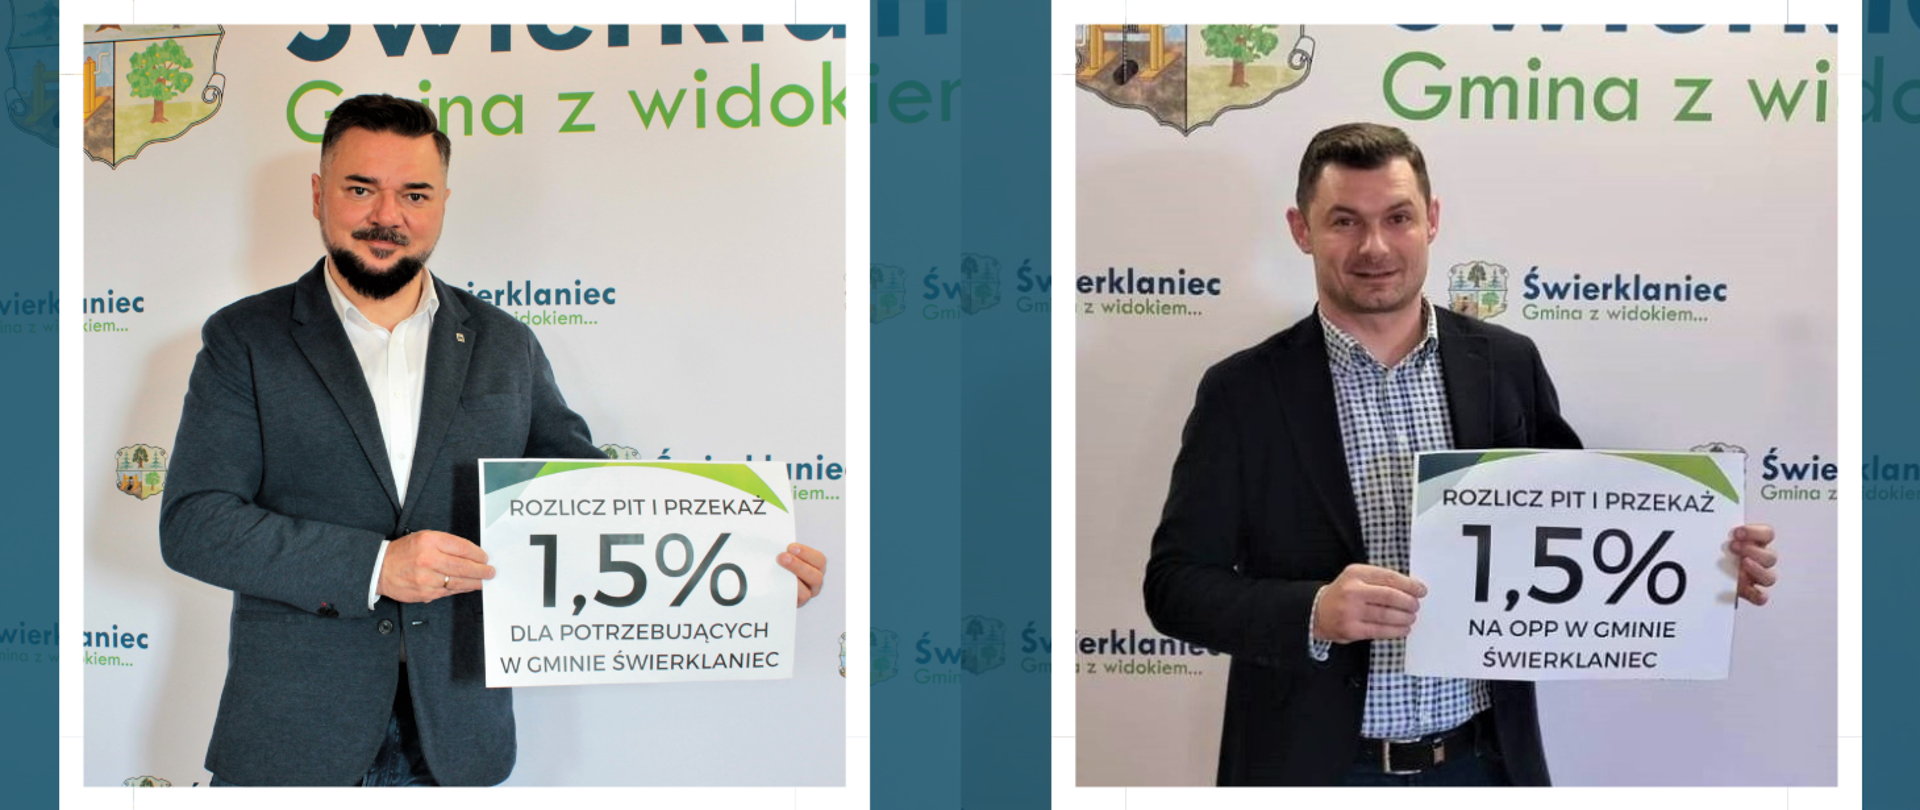 Marek Cyl i Jarosław Wasążnik zachęcają do oddania 1,5% podatku na OPP w gminie lub na potrzebujących w gminie